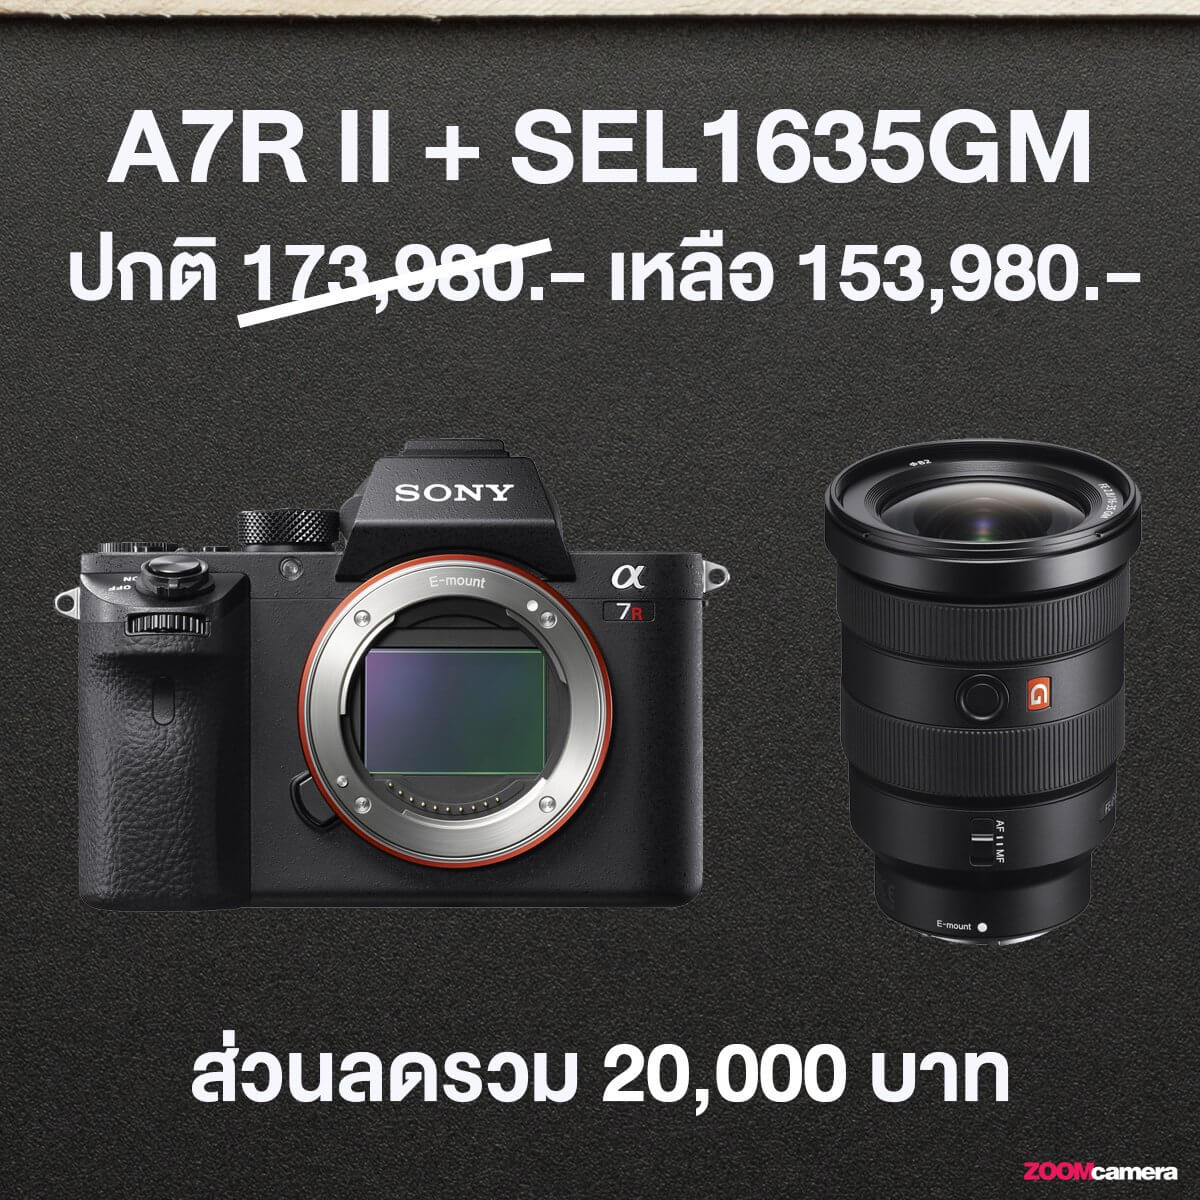 โปรโมชั่น Sony A7R II, A7S II + เลนส์ G,GM จับคู่ยังไงให้ได้ส่วนลดทั้งกล้องและเลนส์ 